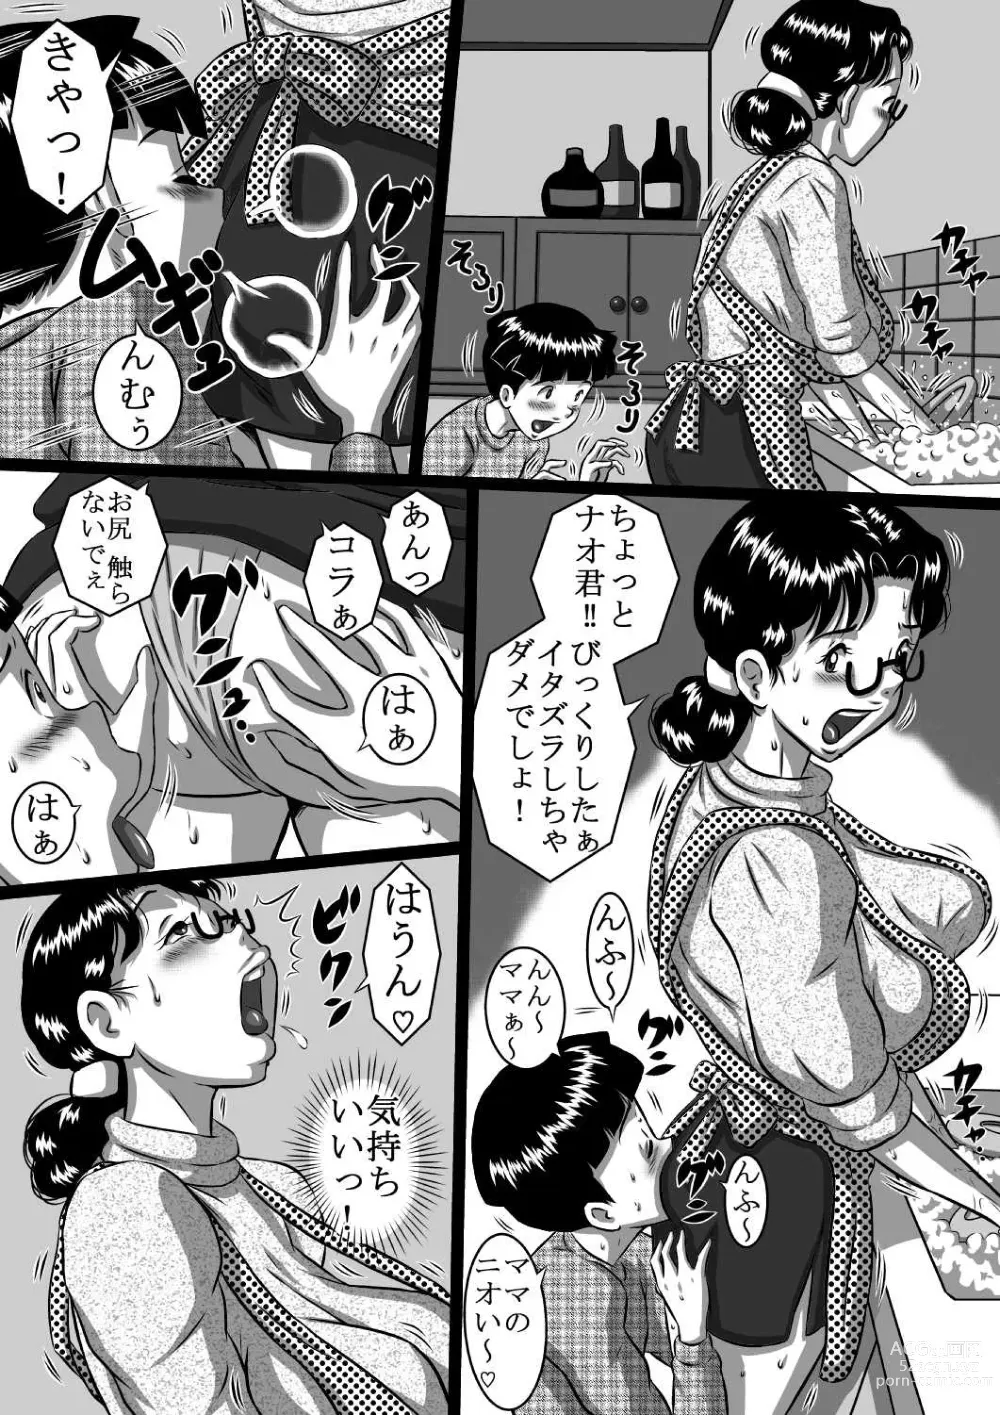 Page 5 of doujinshi Haha x Musuko + Chichi x Musume! Konya  mo Kinshinsoukan (Sex) Shinai to! Saa, Kazoku Minna de!